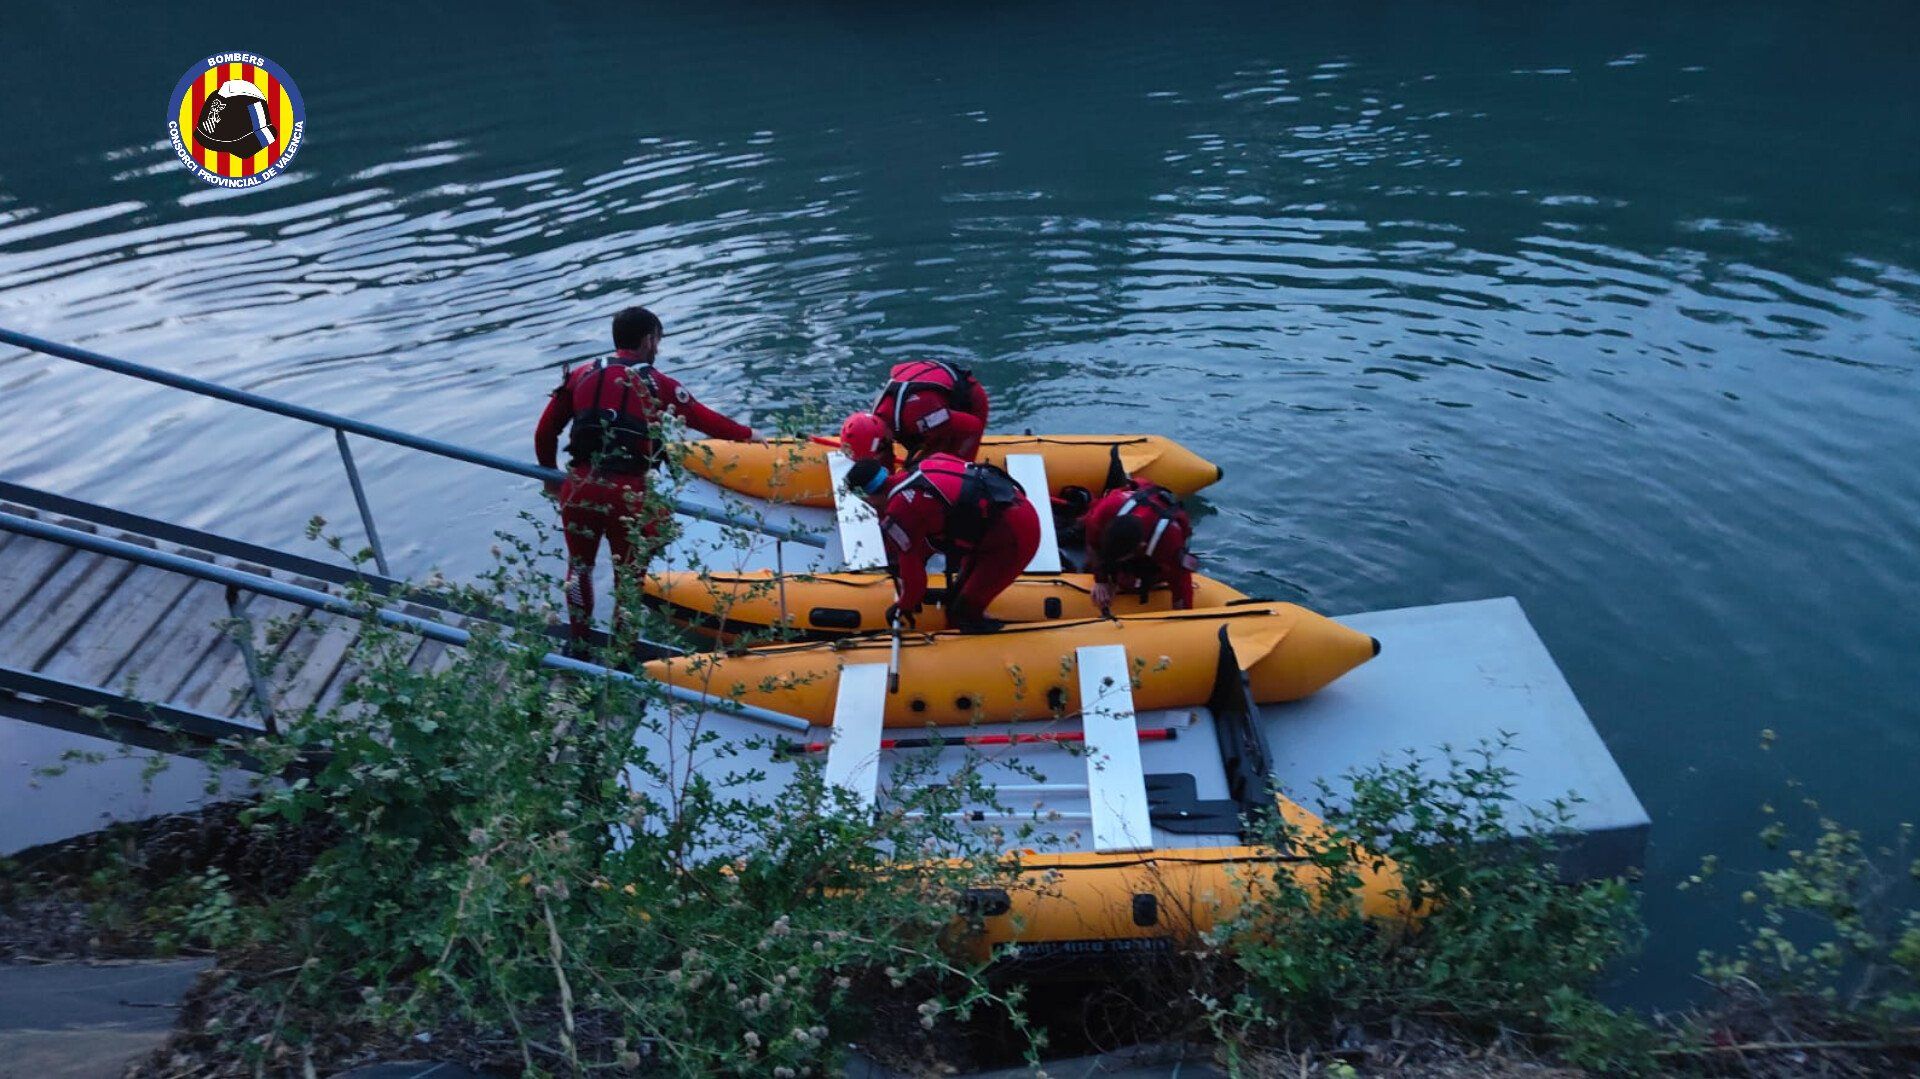 Los bomberos, en la búsqueda del niño, en las primeras horas tras su desaparición en el río.